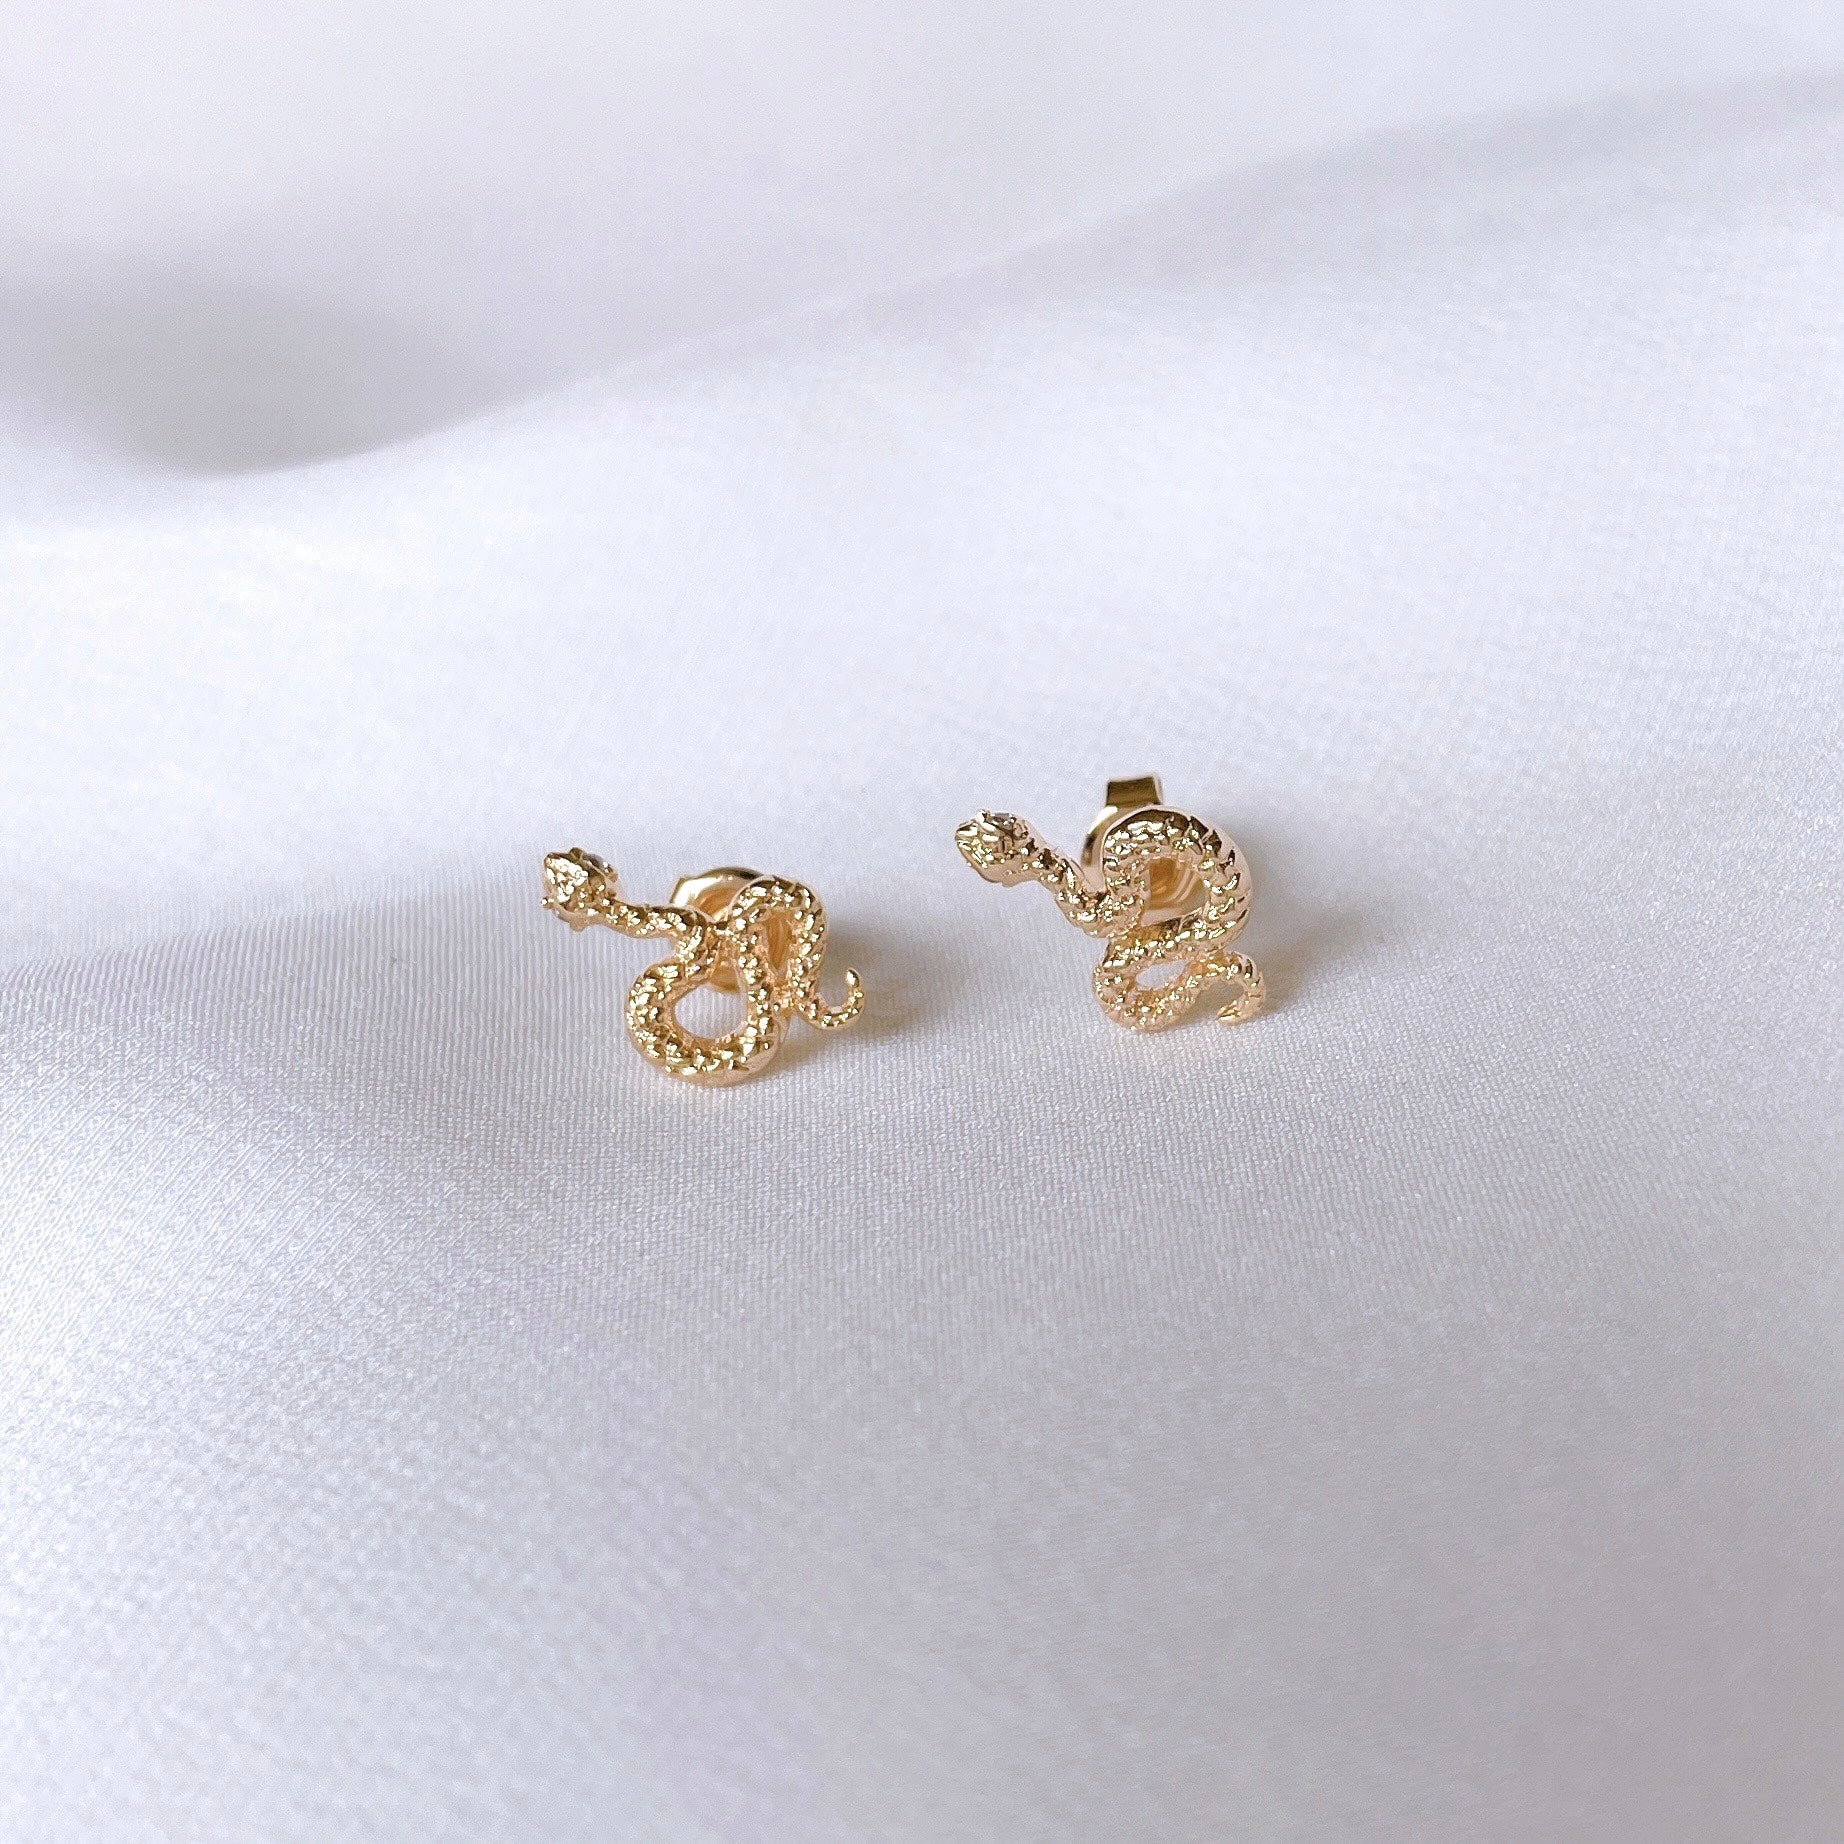 Gold-plated “Snake” earrings